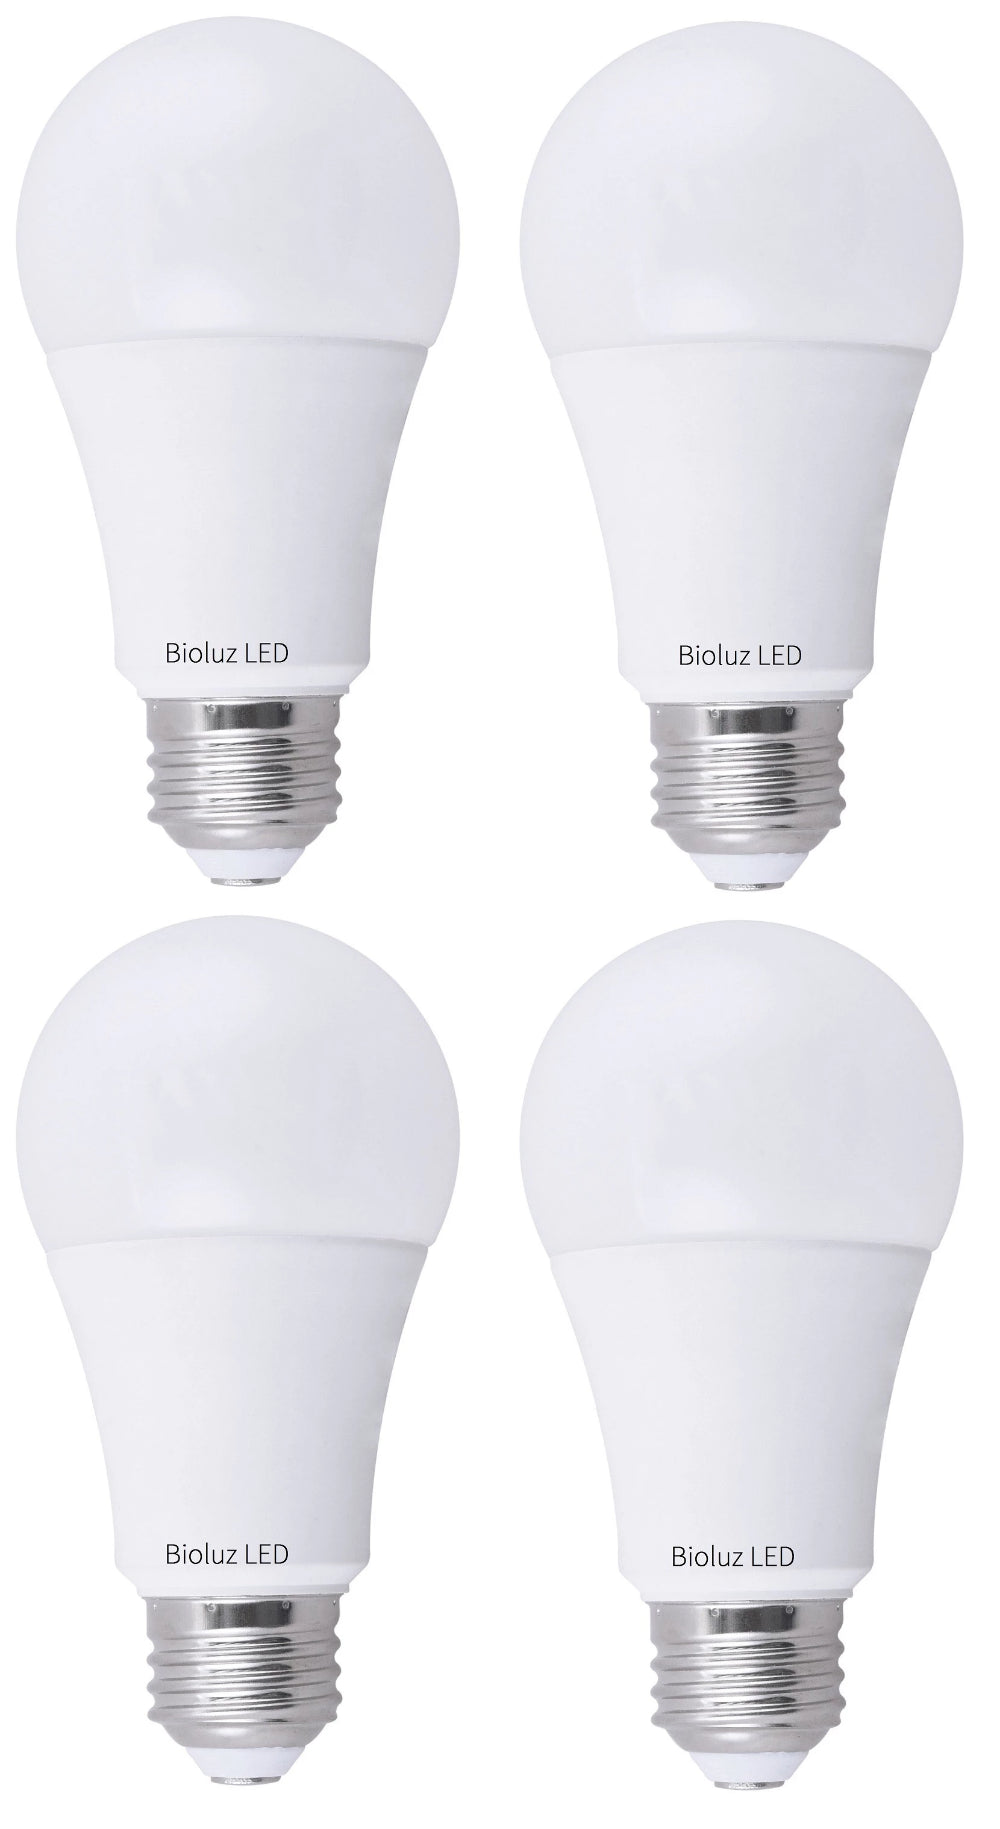 Bioluz LED A19 Watt LED Bulbs Dimmable